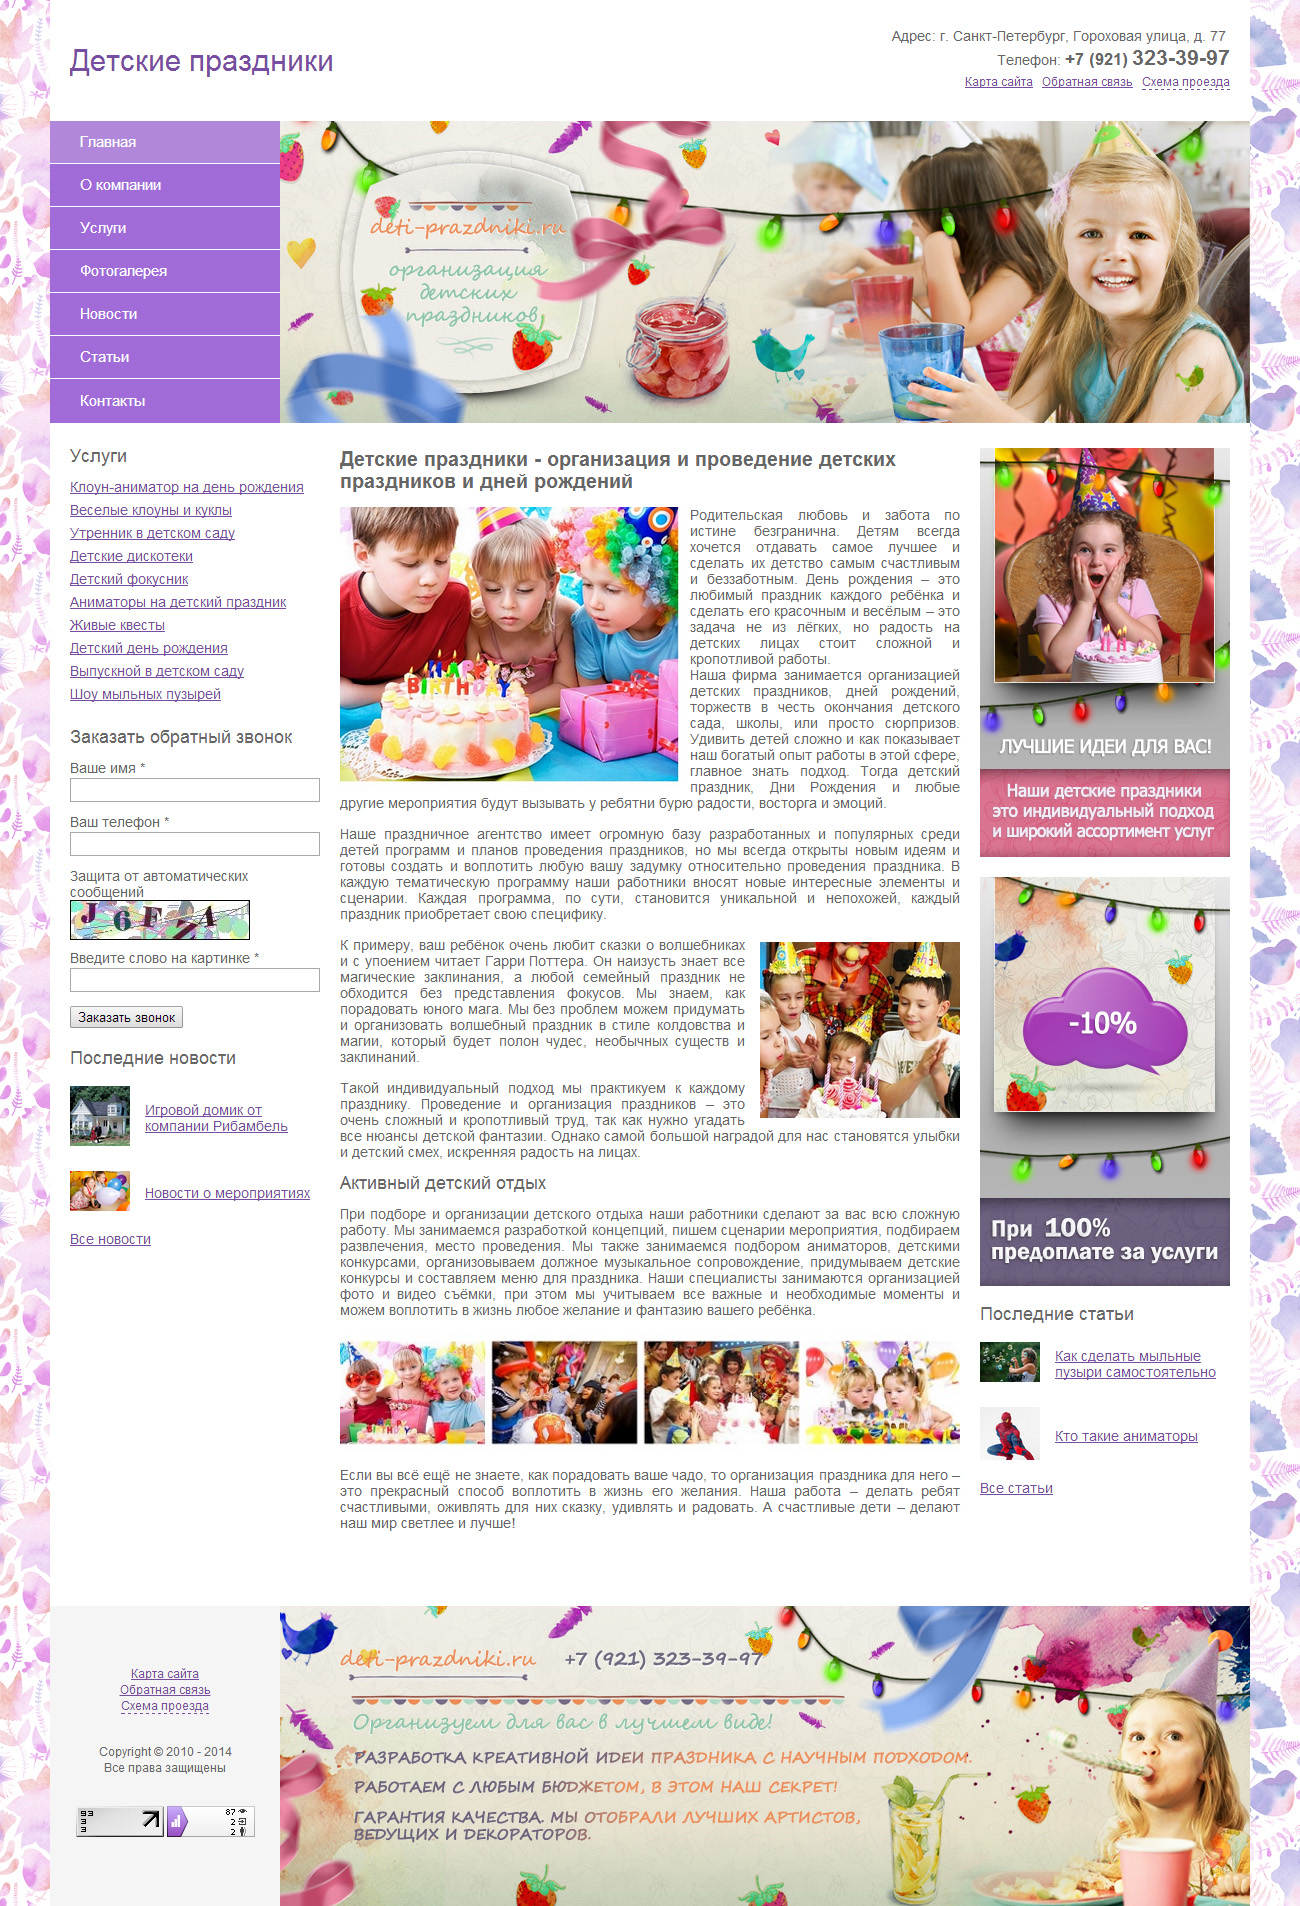 Сайт организации детских праздников "Детские праздники"